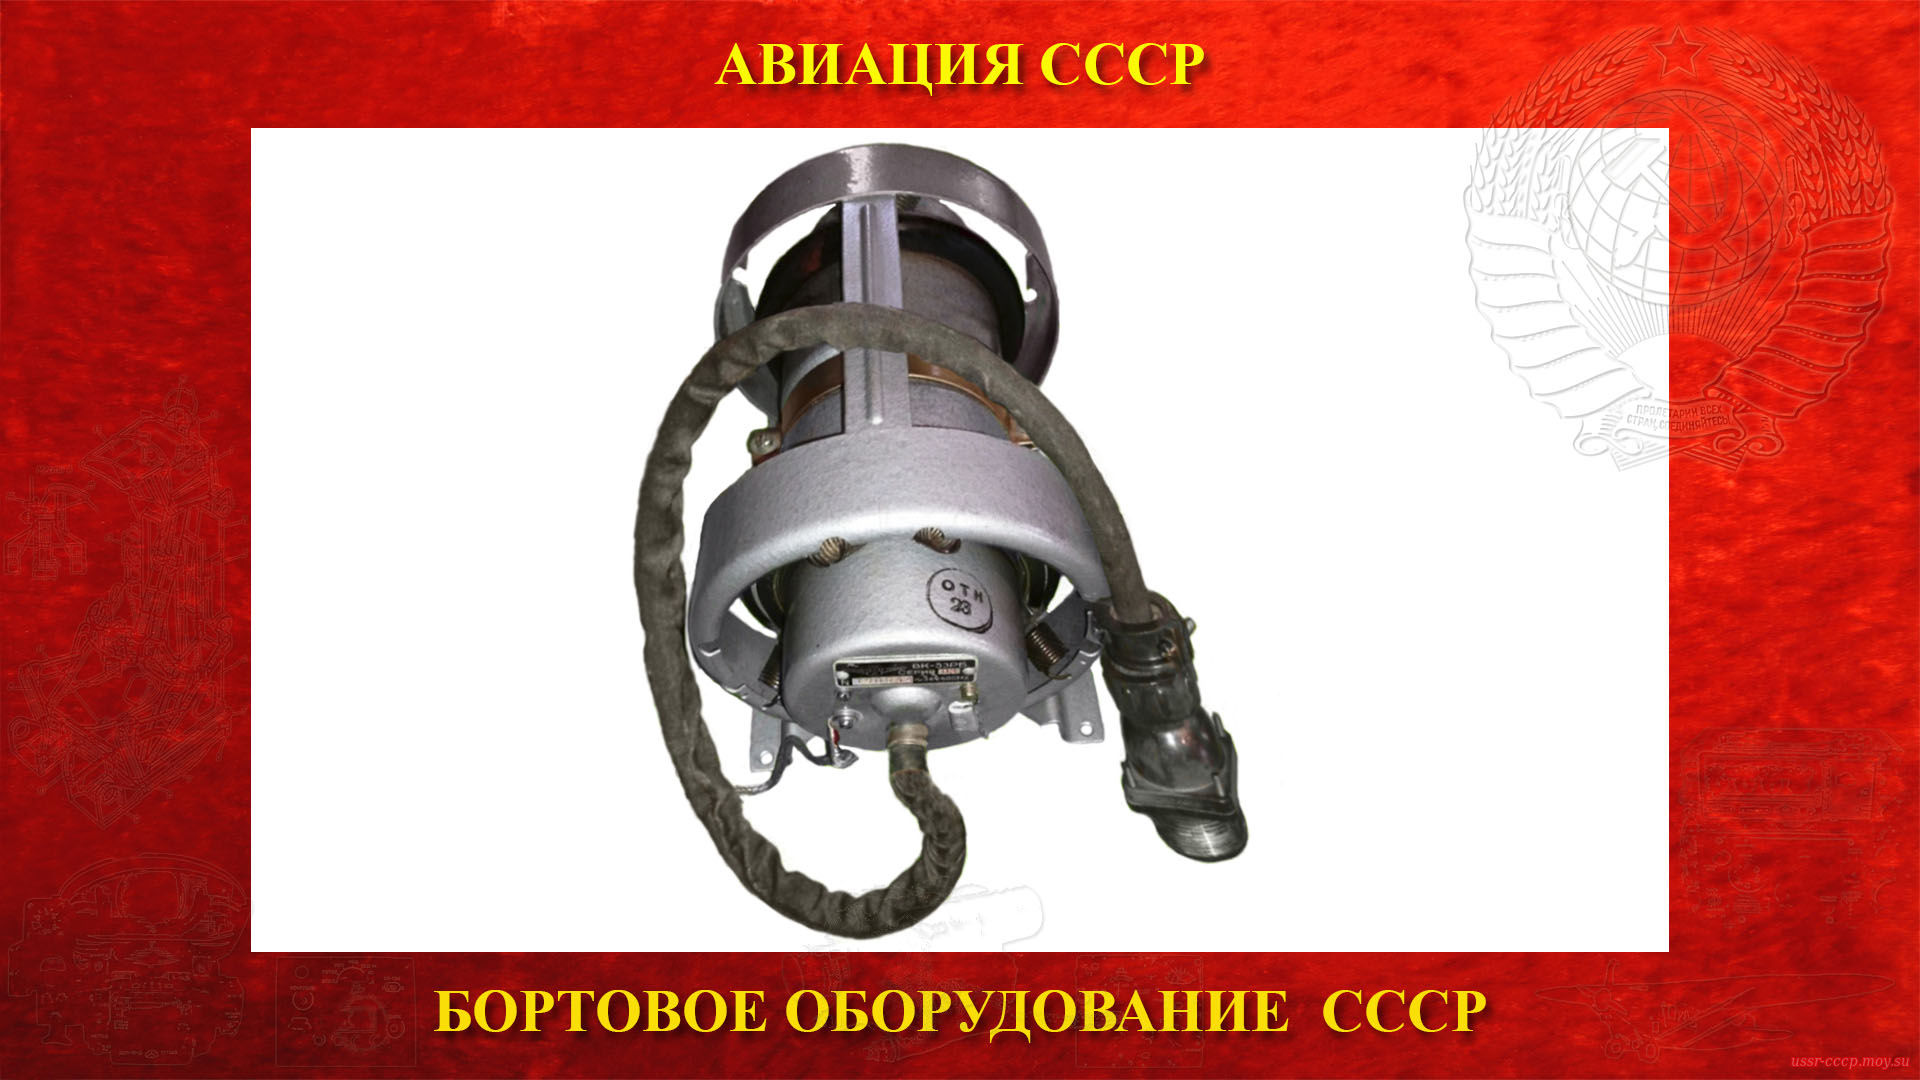 ВК-53РБ (3-я серия) — Выключатель коррекции — Гироскопический датчик СССР (повествование)